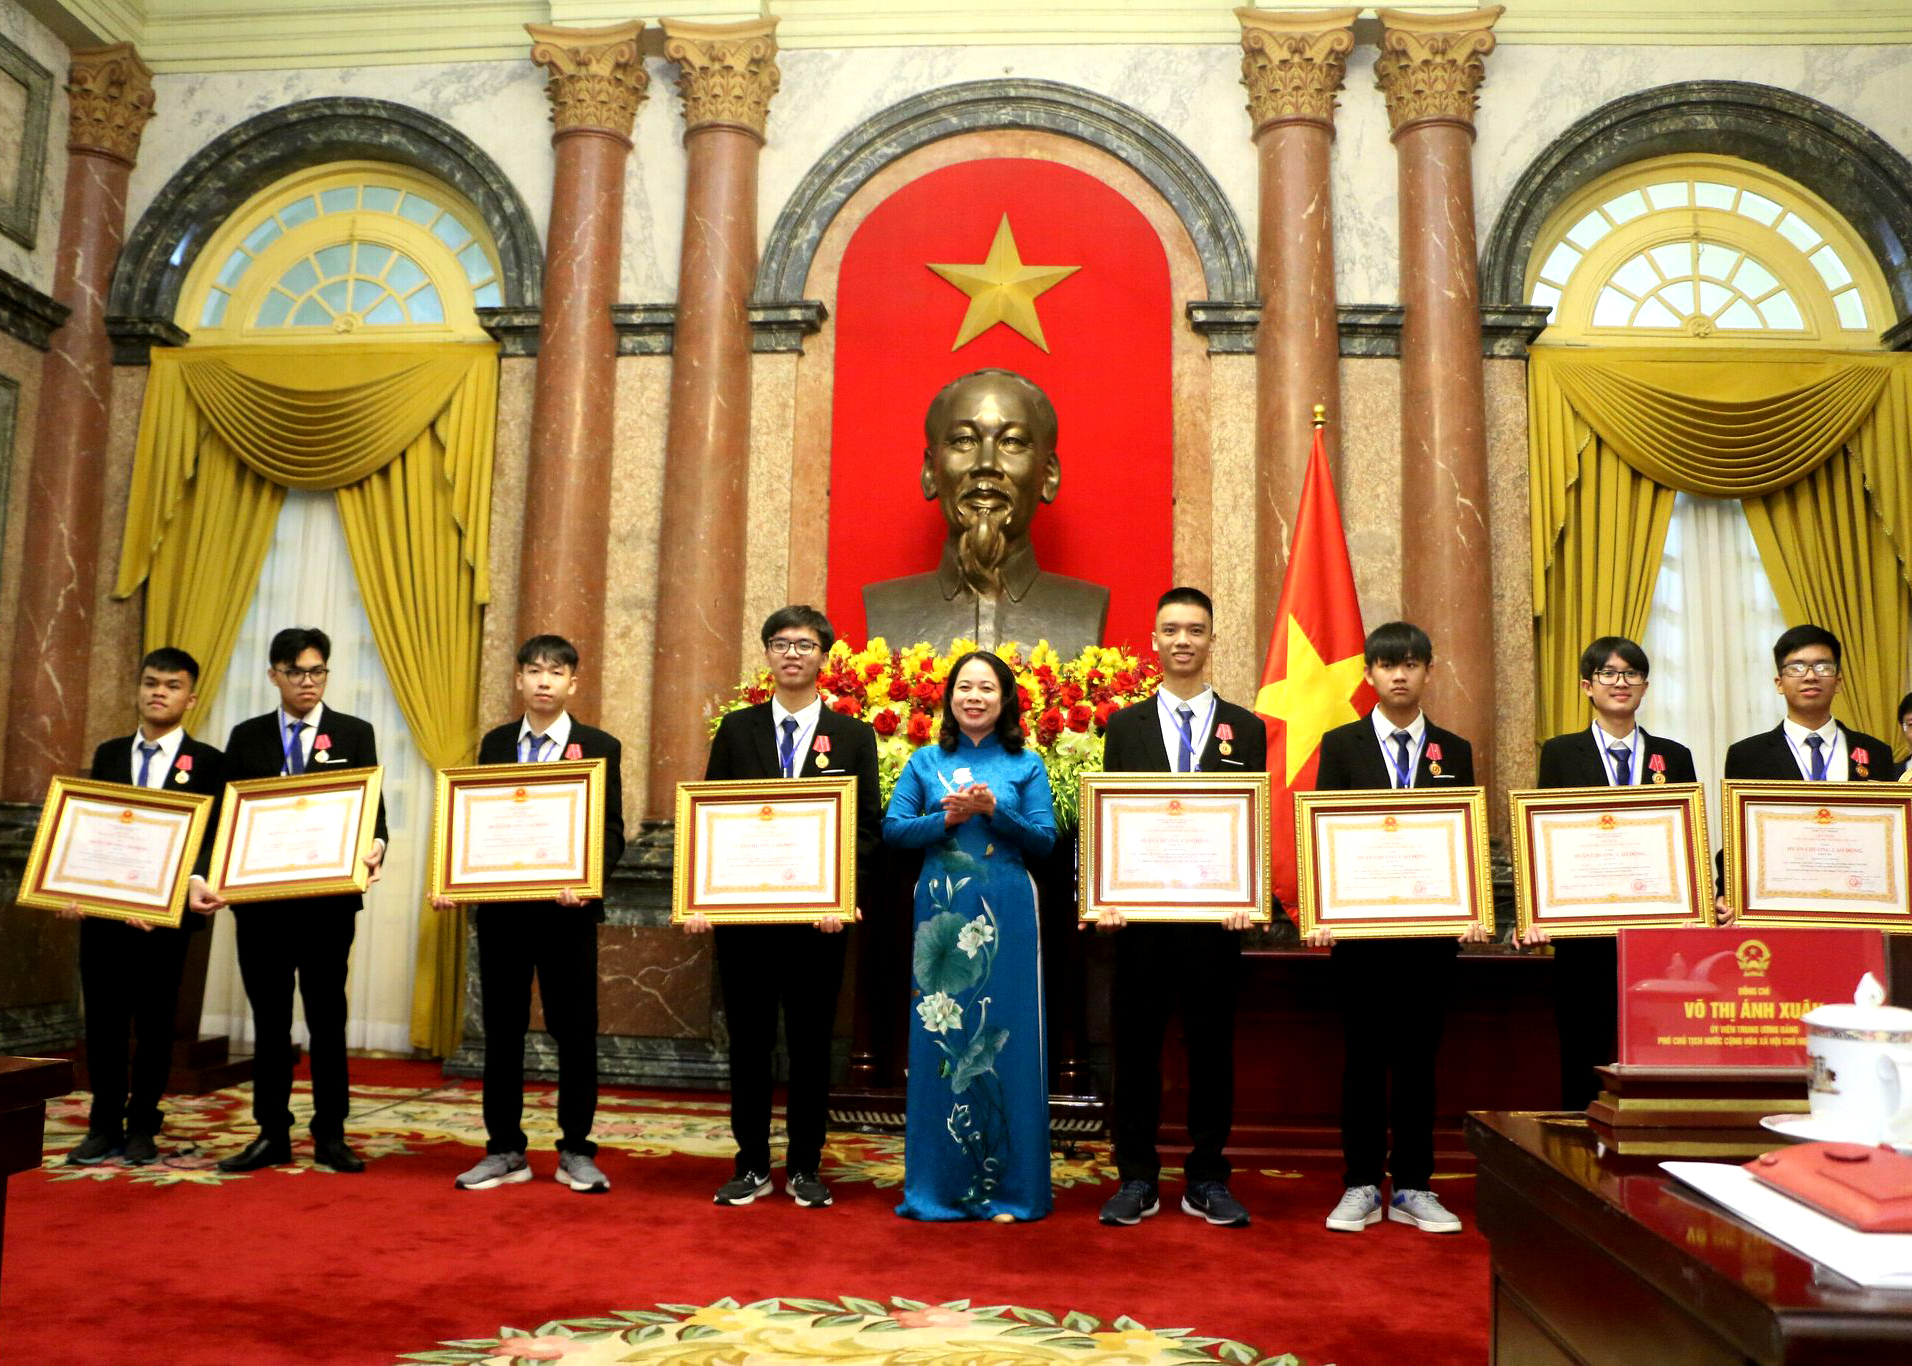 Em Hoàng Tuấn Dũng (thứ 4 từ phải sang) được Phó Chủ tịch nước Võ Thị Ánh Xuân trao tặng Huân chương Lao động Hạng Ba. Ảnh: Giáo dục và Thời đại